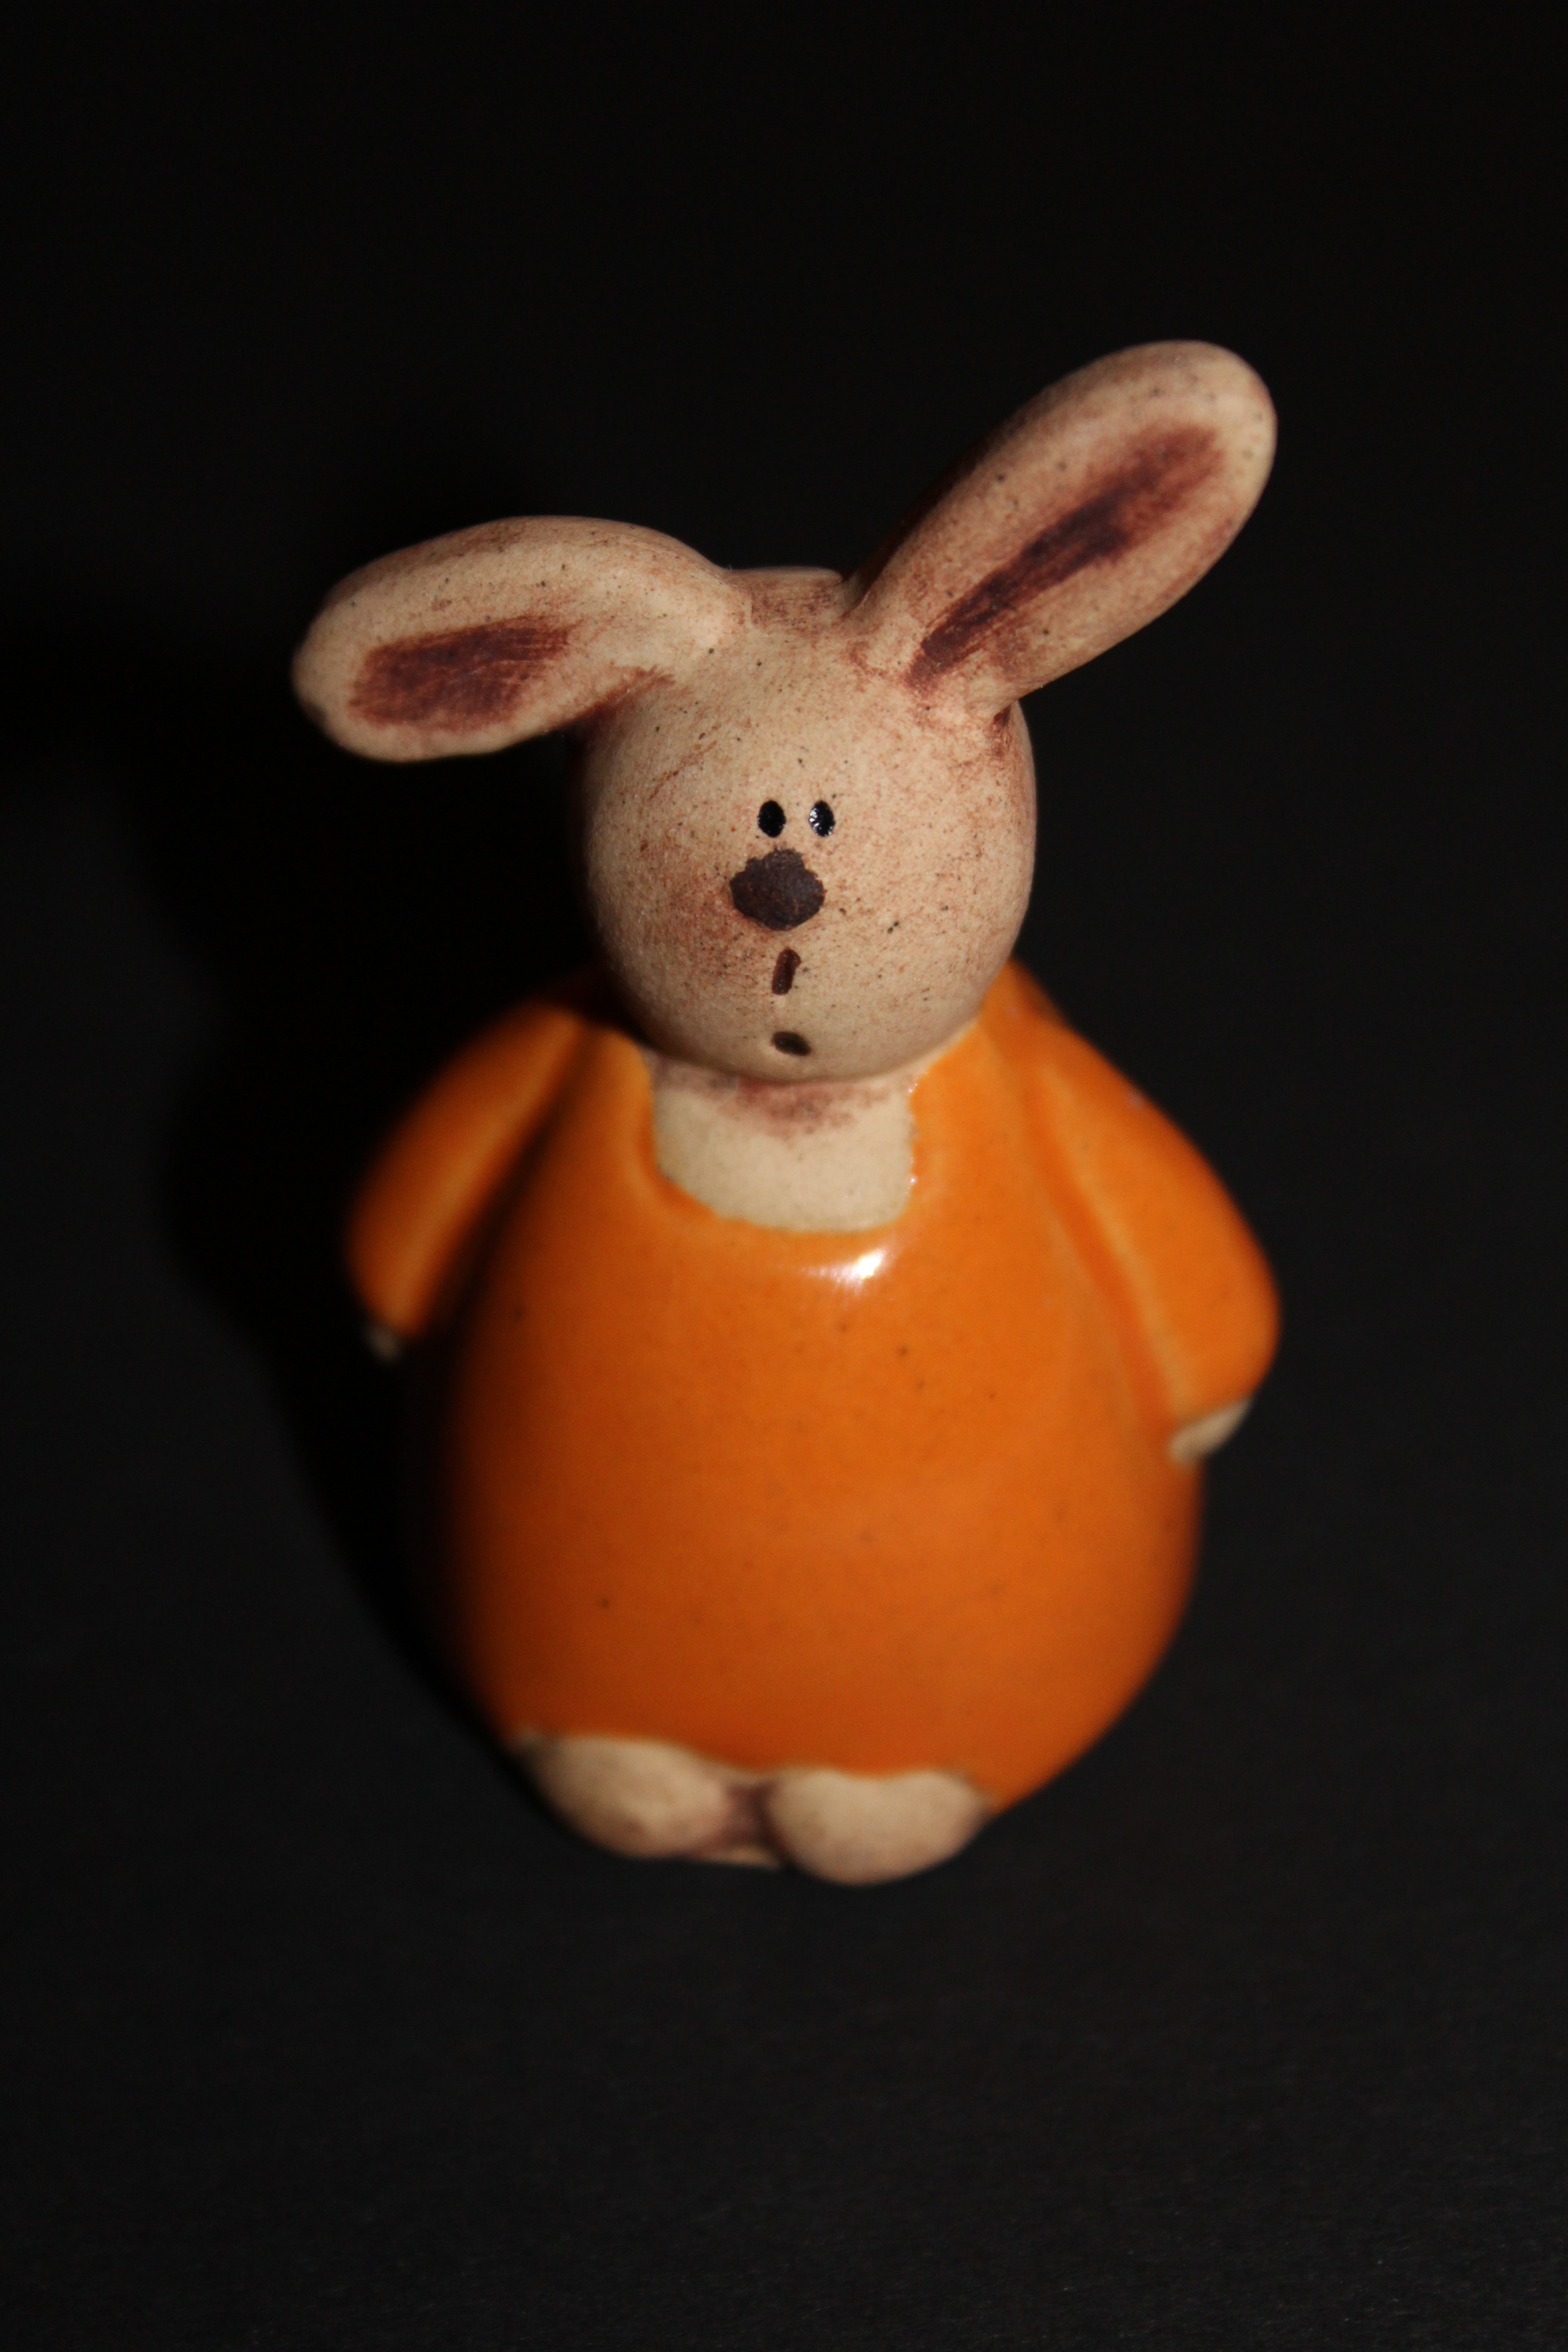 orange and white ceramic rabbit figure